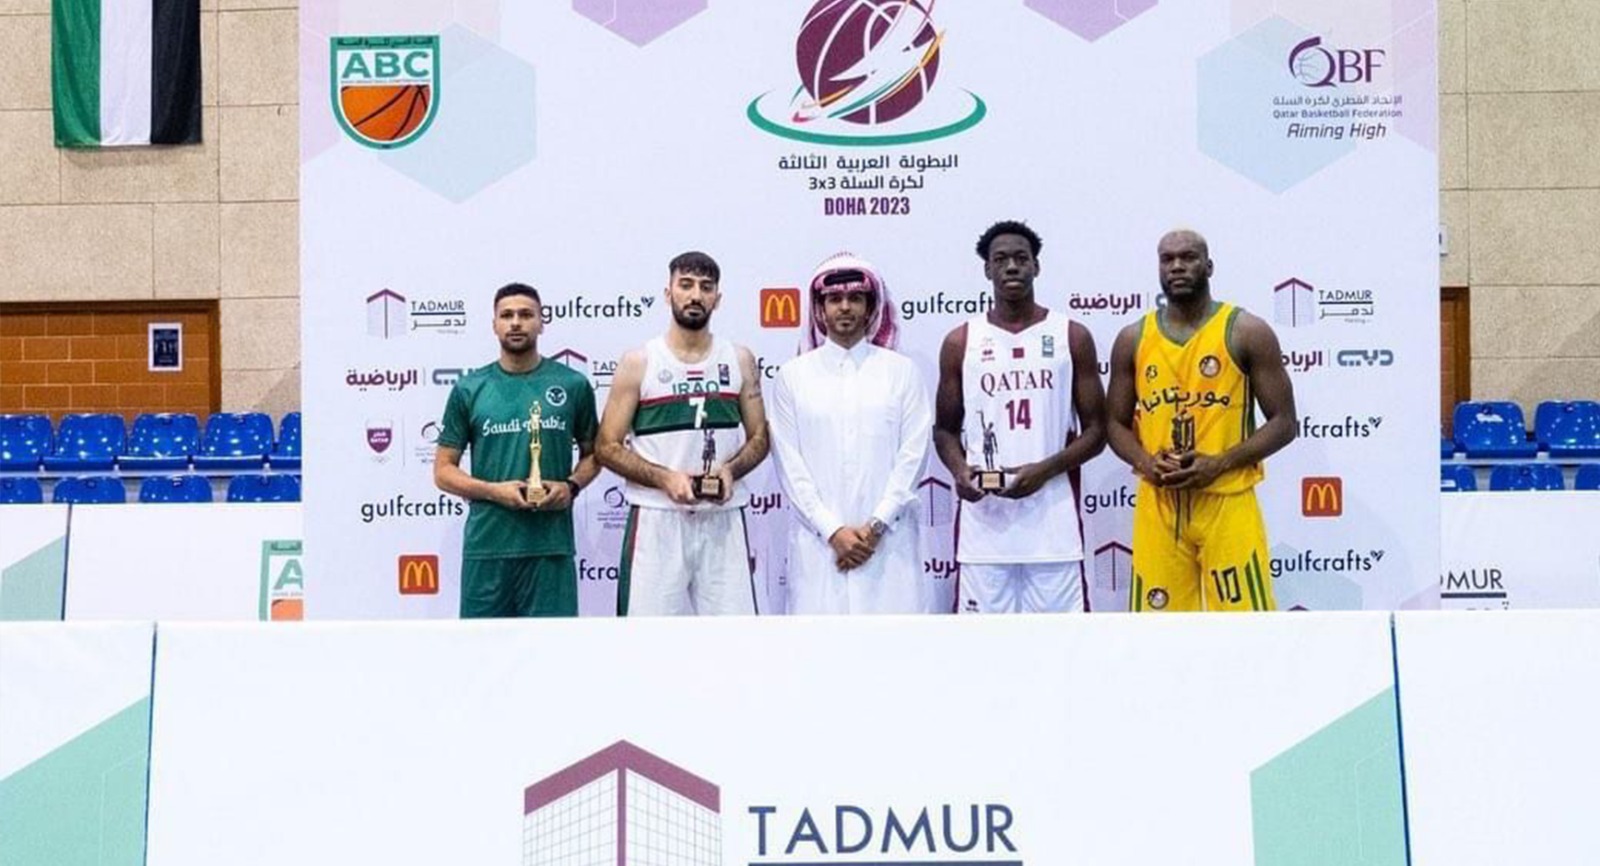 عراقيان يحصلان على جائزة الهداف والأفضل في بطولة عربية لكرة السلة